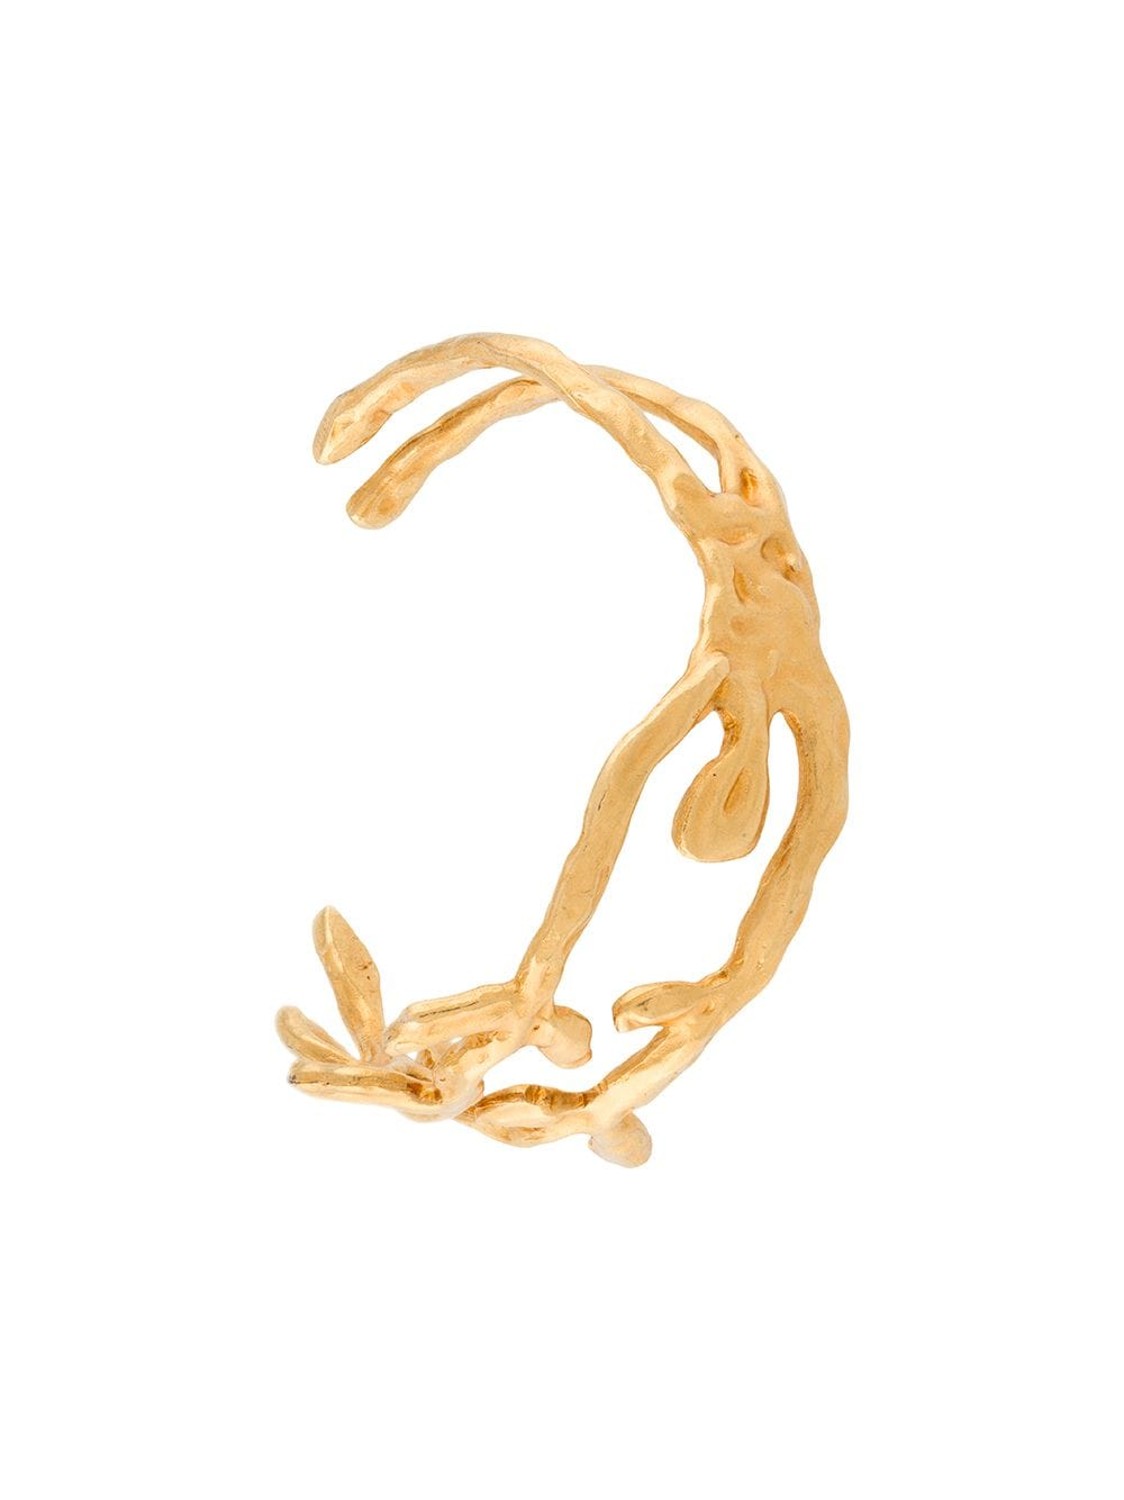 shop Marni Sales Bijoux: Bijoux Marni, bracciale rigido, motivo ramo, dorato.

Composizione: 100% ottone. number 1667